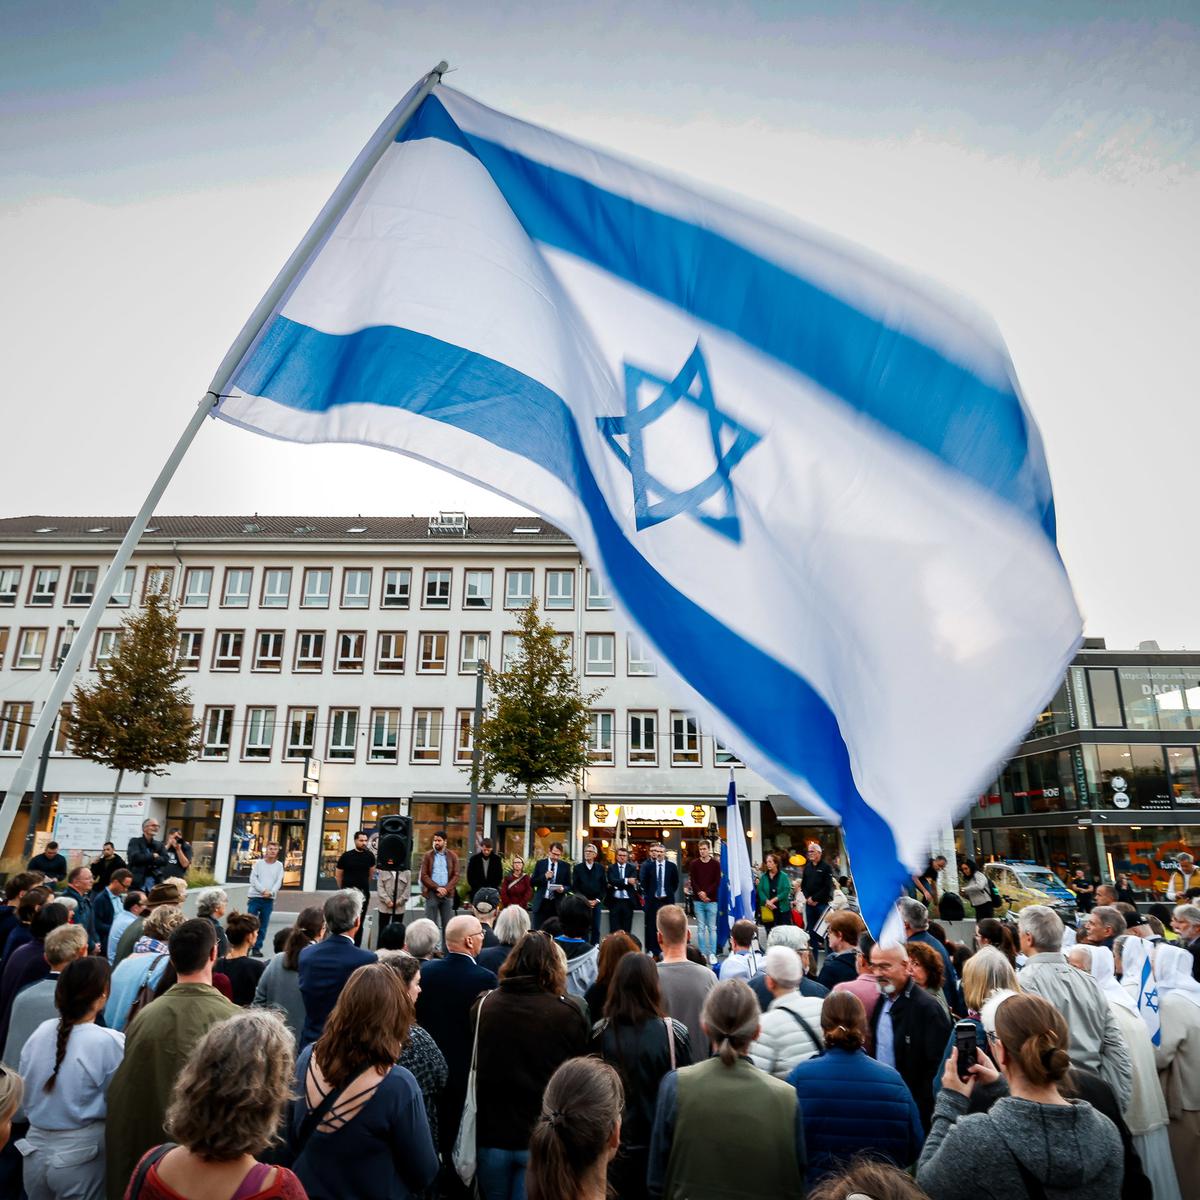 Israel-Flagge abgerissen: Festnahme während Gedenkveranstaltung -  Osthessen